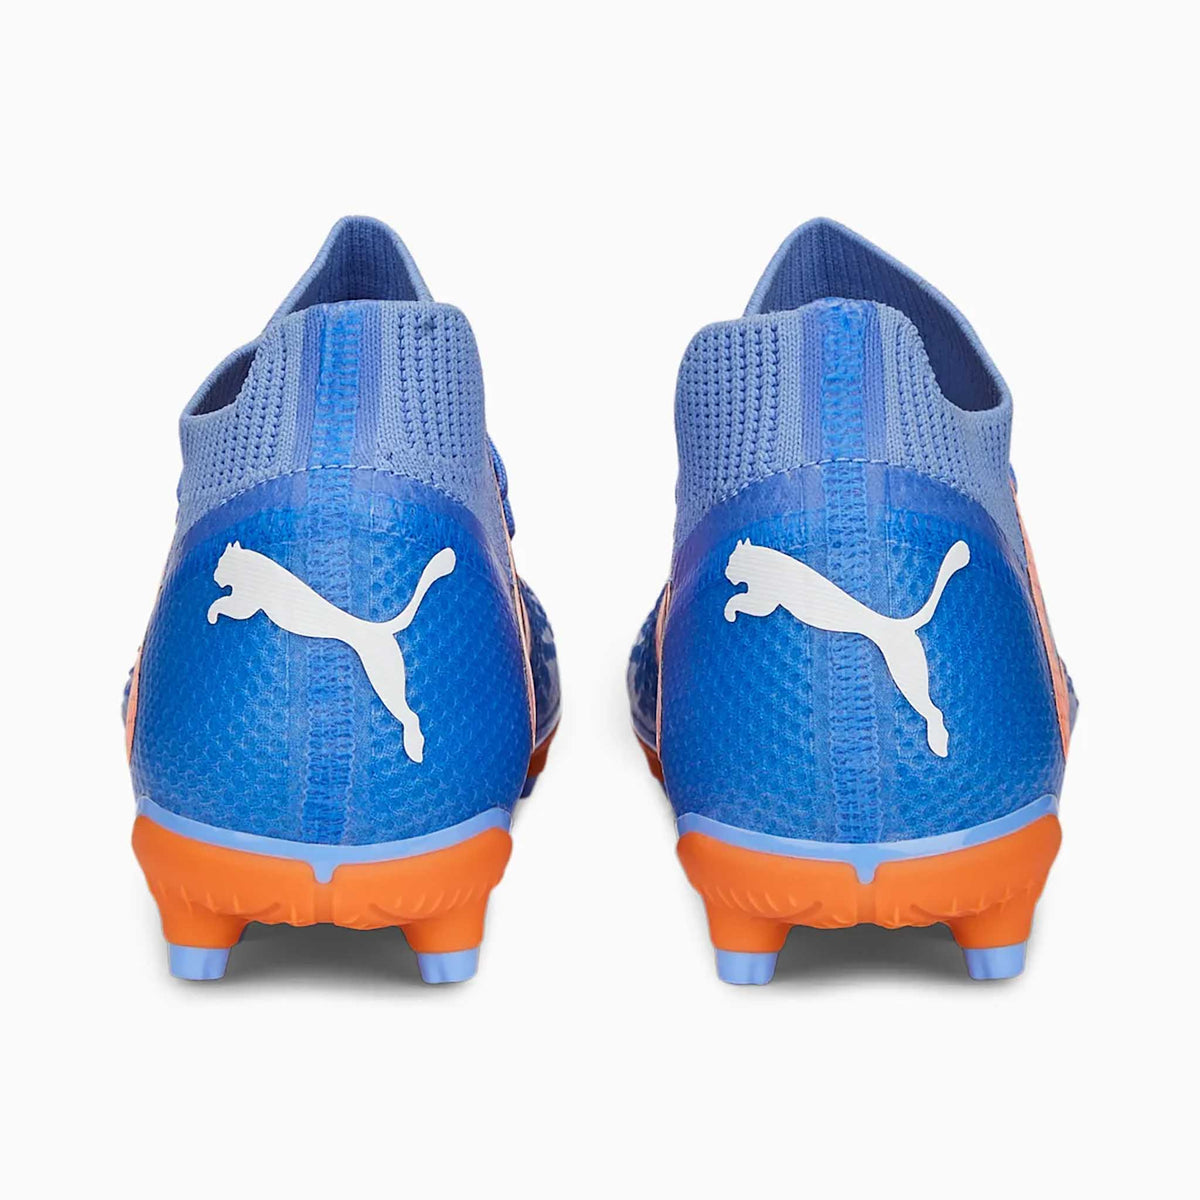 Puma Future Pro FG/AG chaussures de soccer à crampons enfant talons- blue glimmer white orange